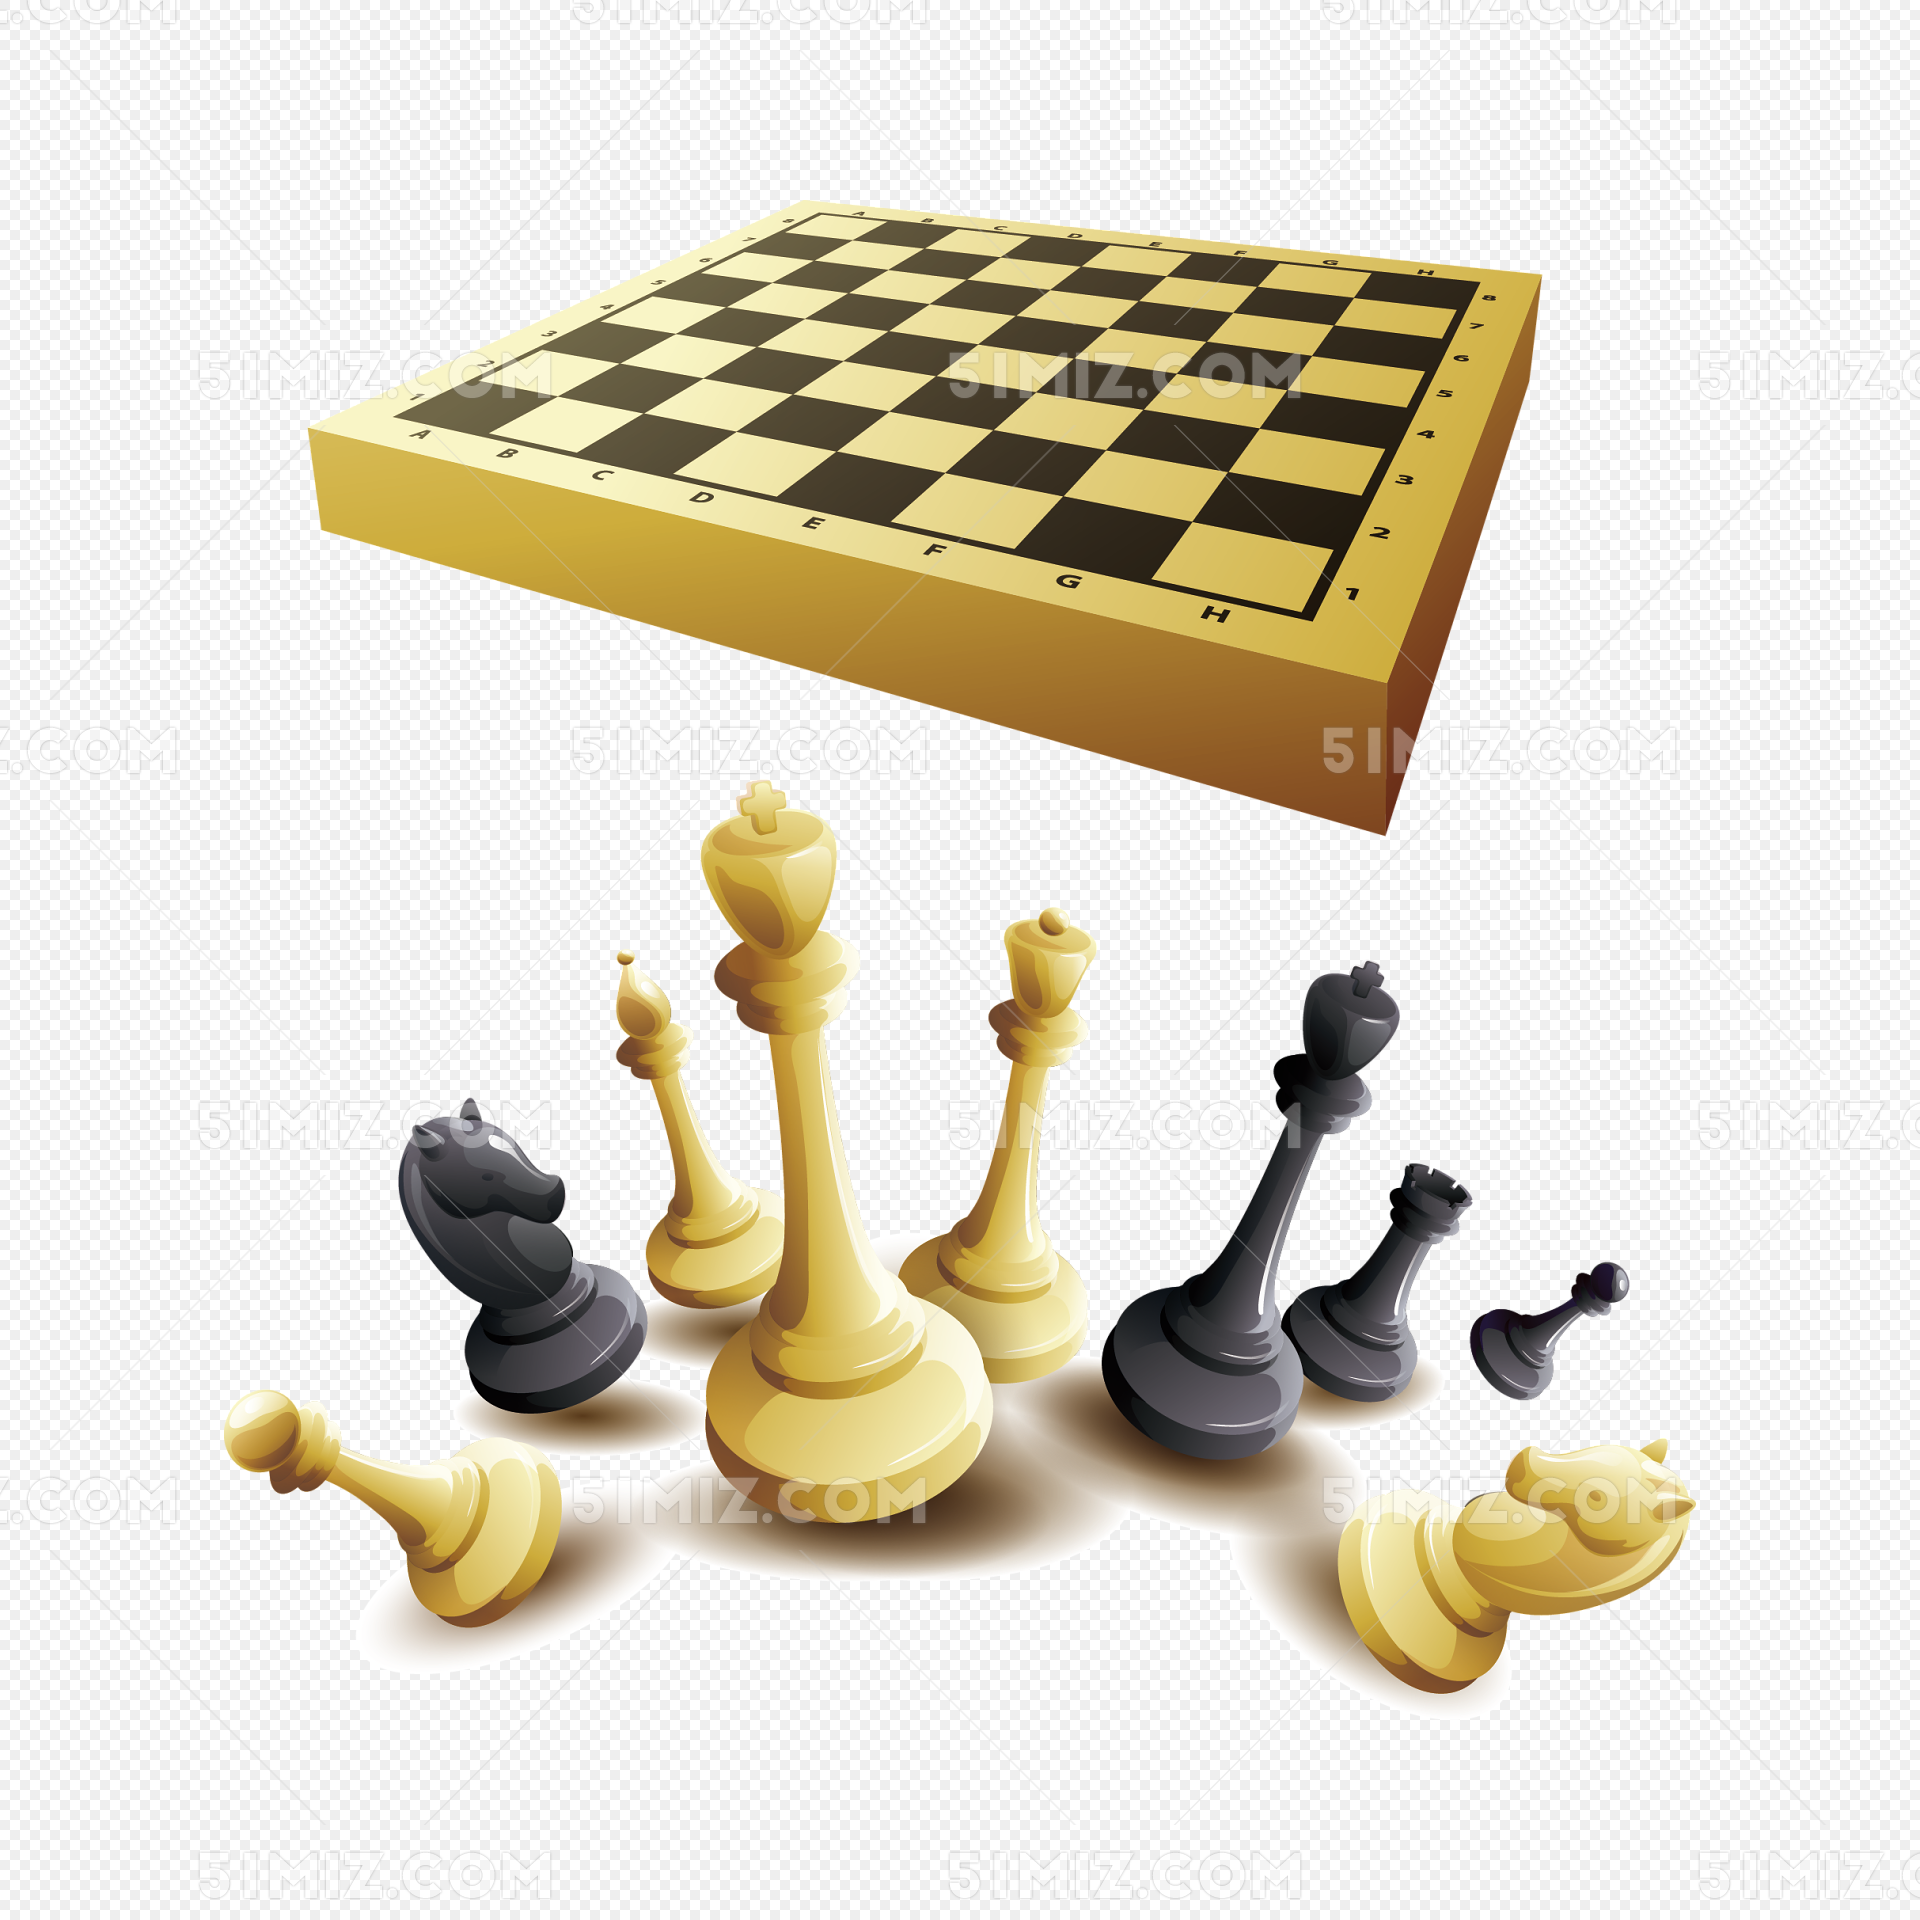 两位下国际象棋的卡通素材下载-欧莱凯设计网